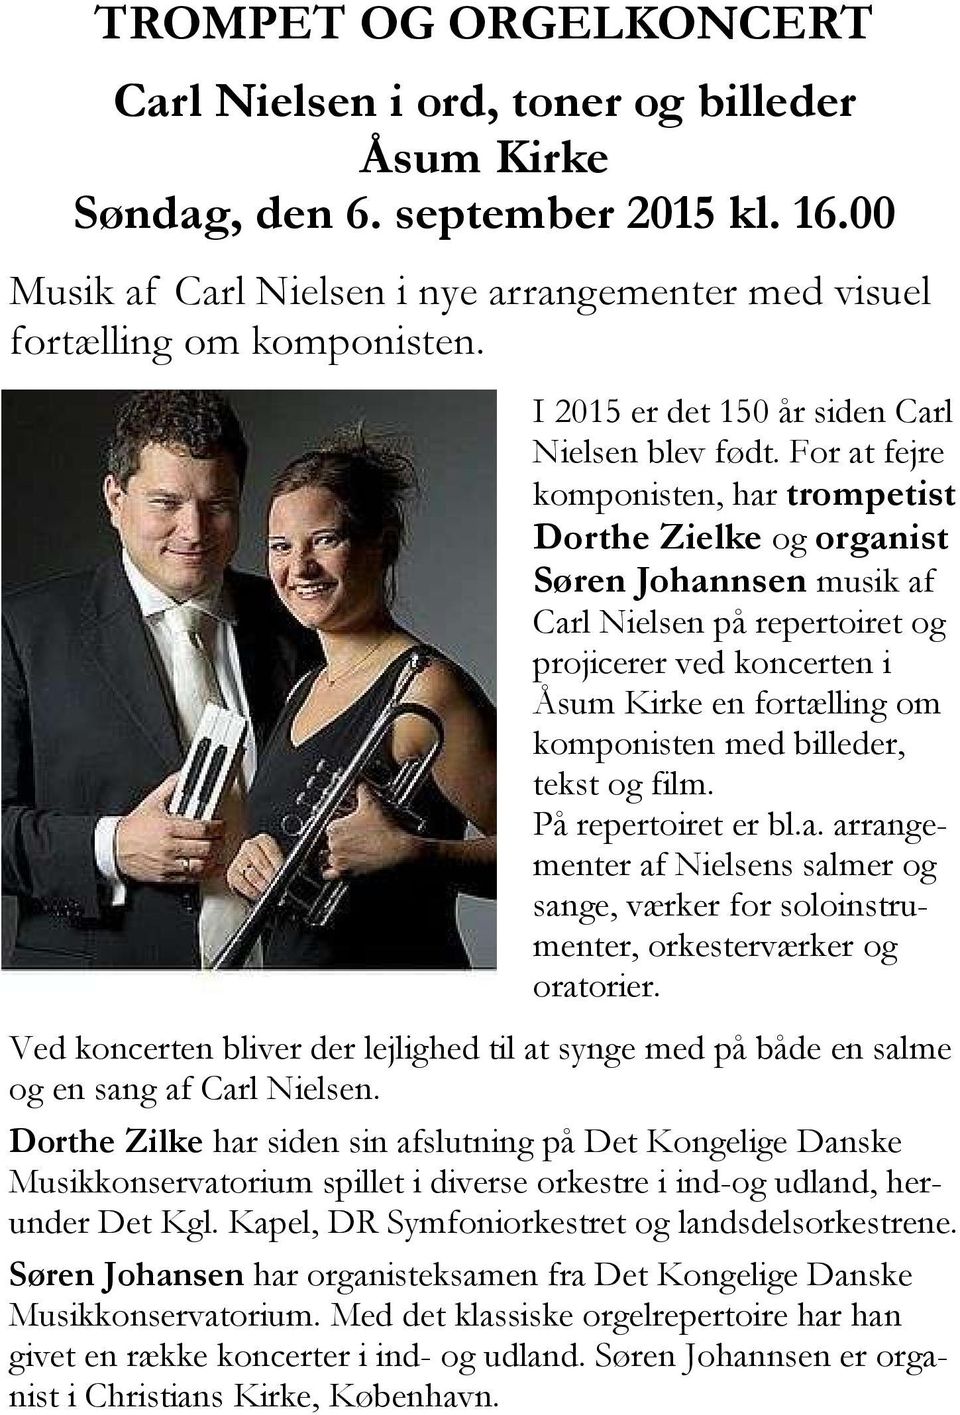 For at fejre komponisten, har trompetist Dorthe Zielke og organist Søren Johannsen musik af Carl Nielsen på repertoiret og projicerer ved koncerten i Åsum Kirke en fortælling om komponisten med